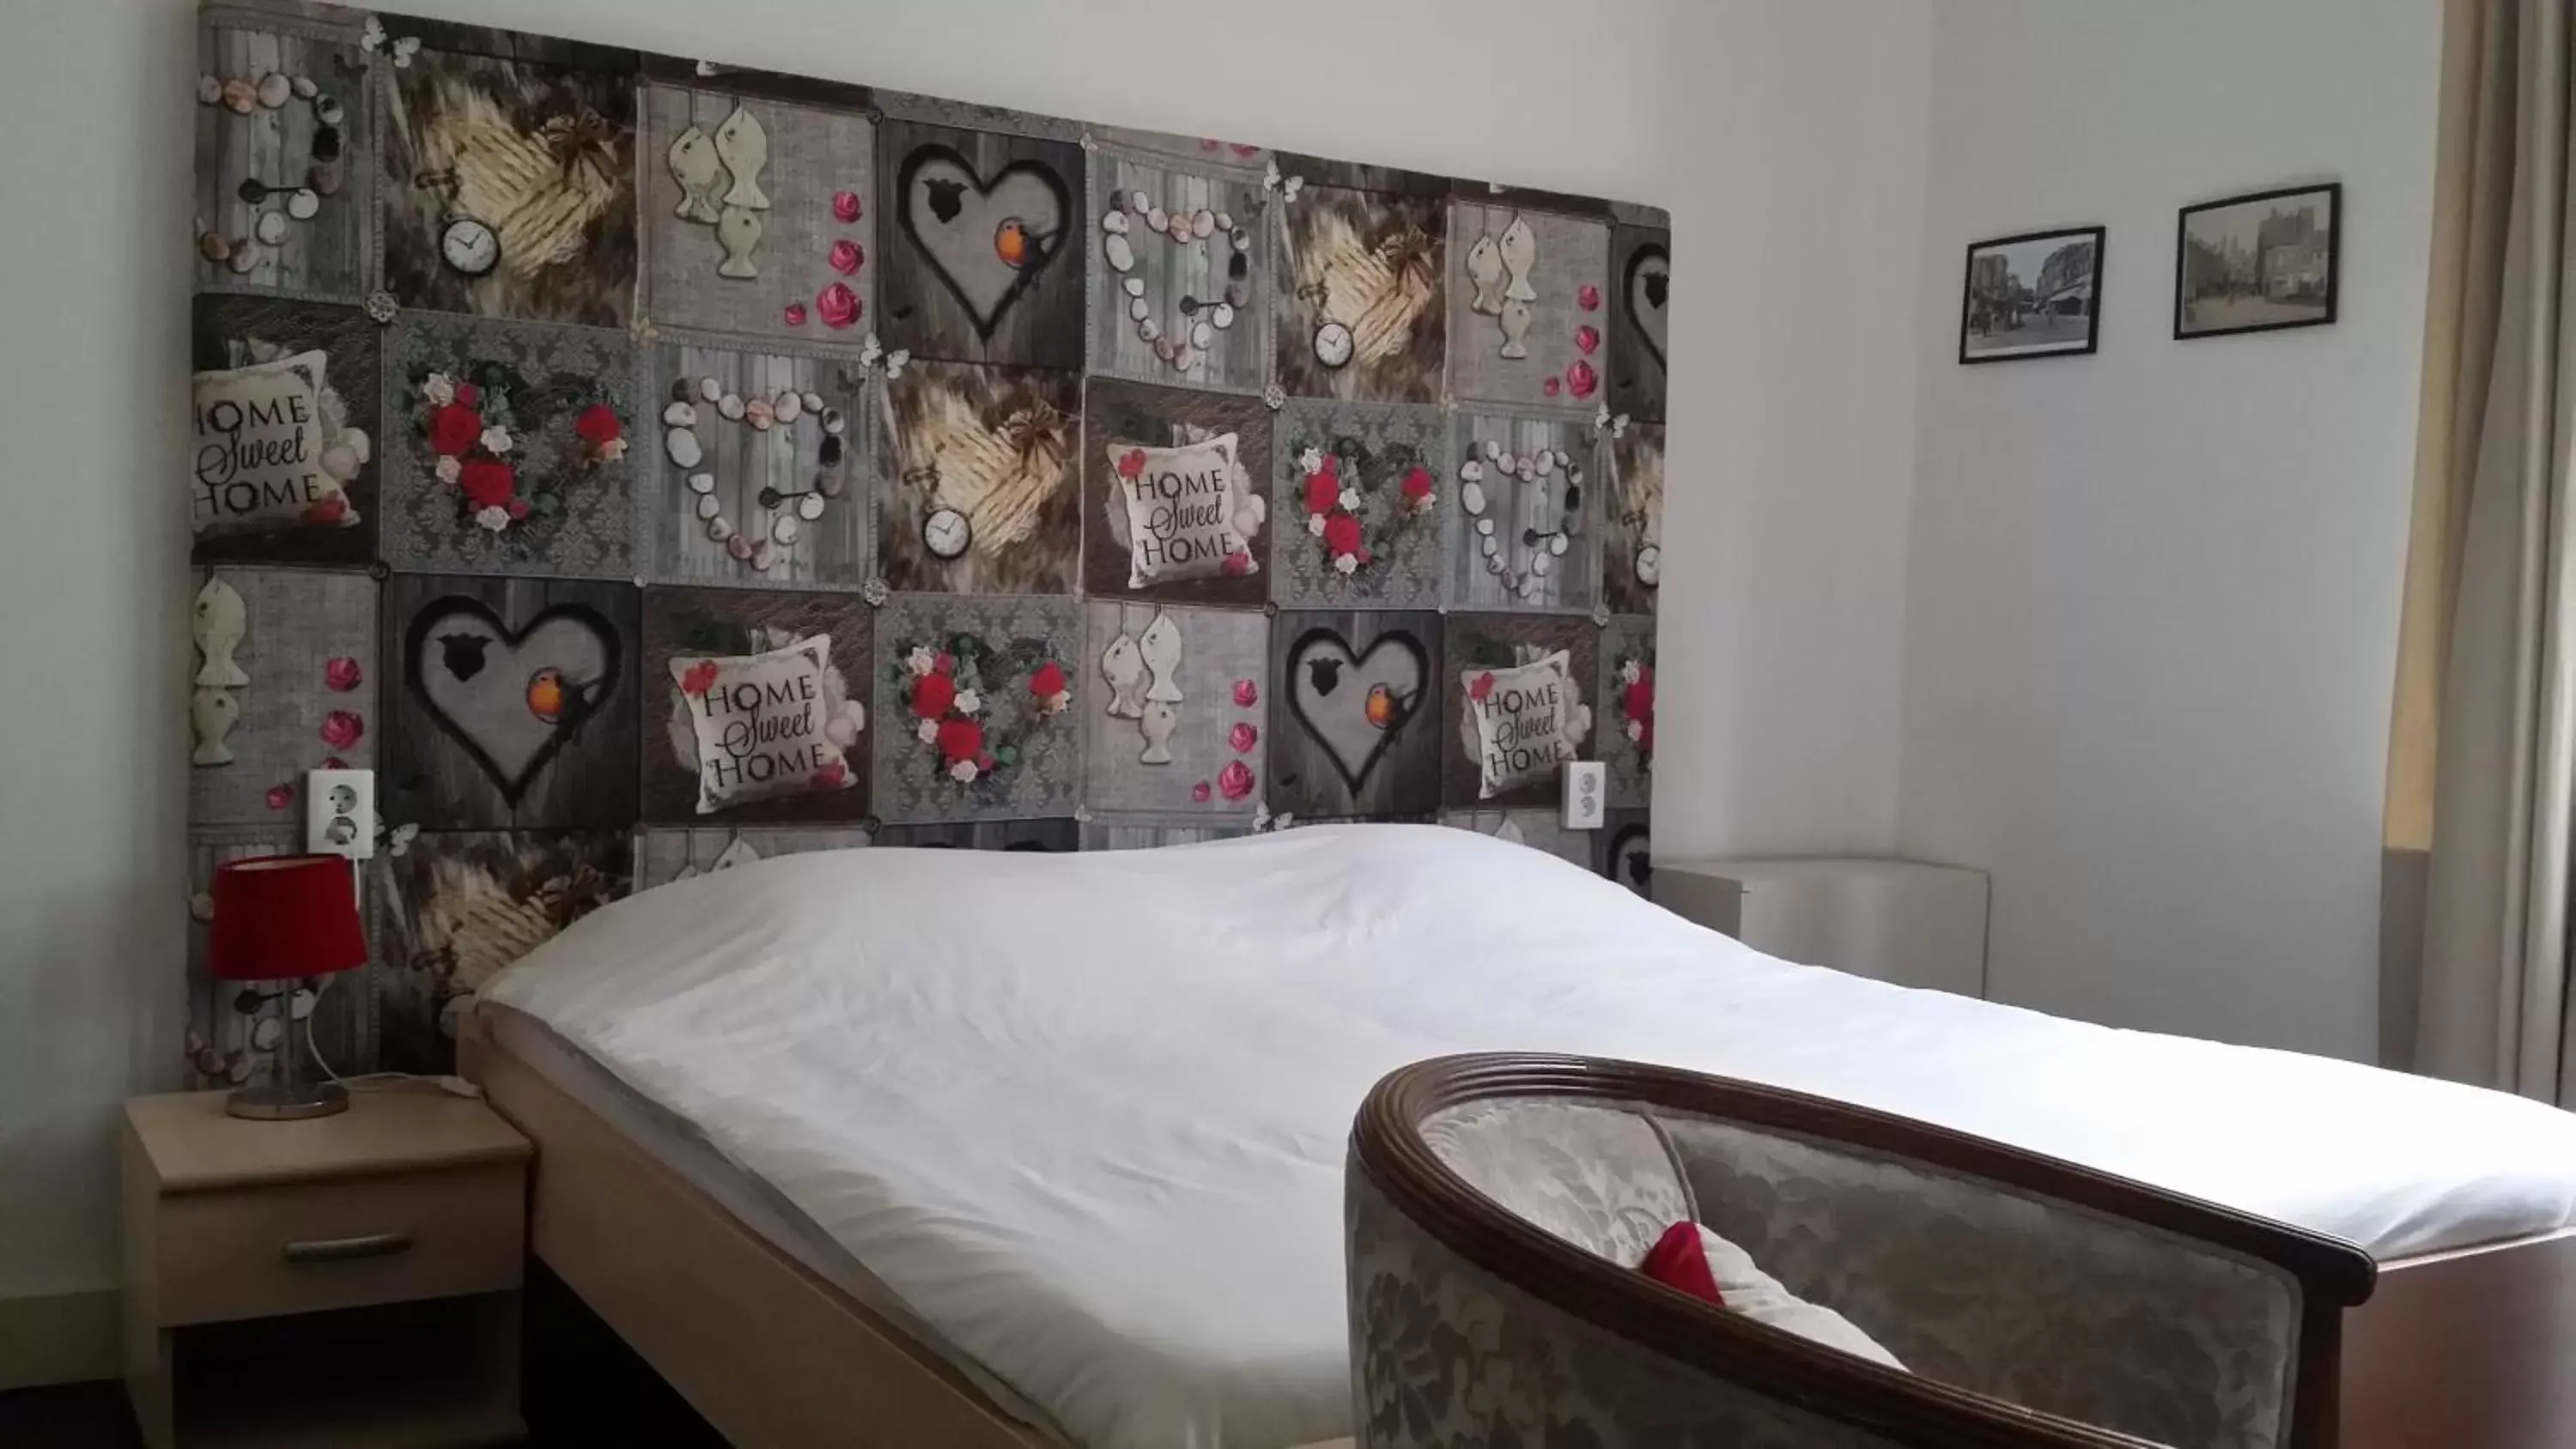 Bed, Room Photo in De Roermondse beleving